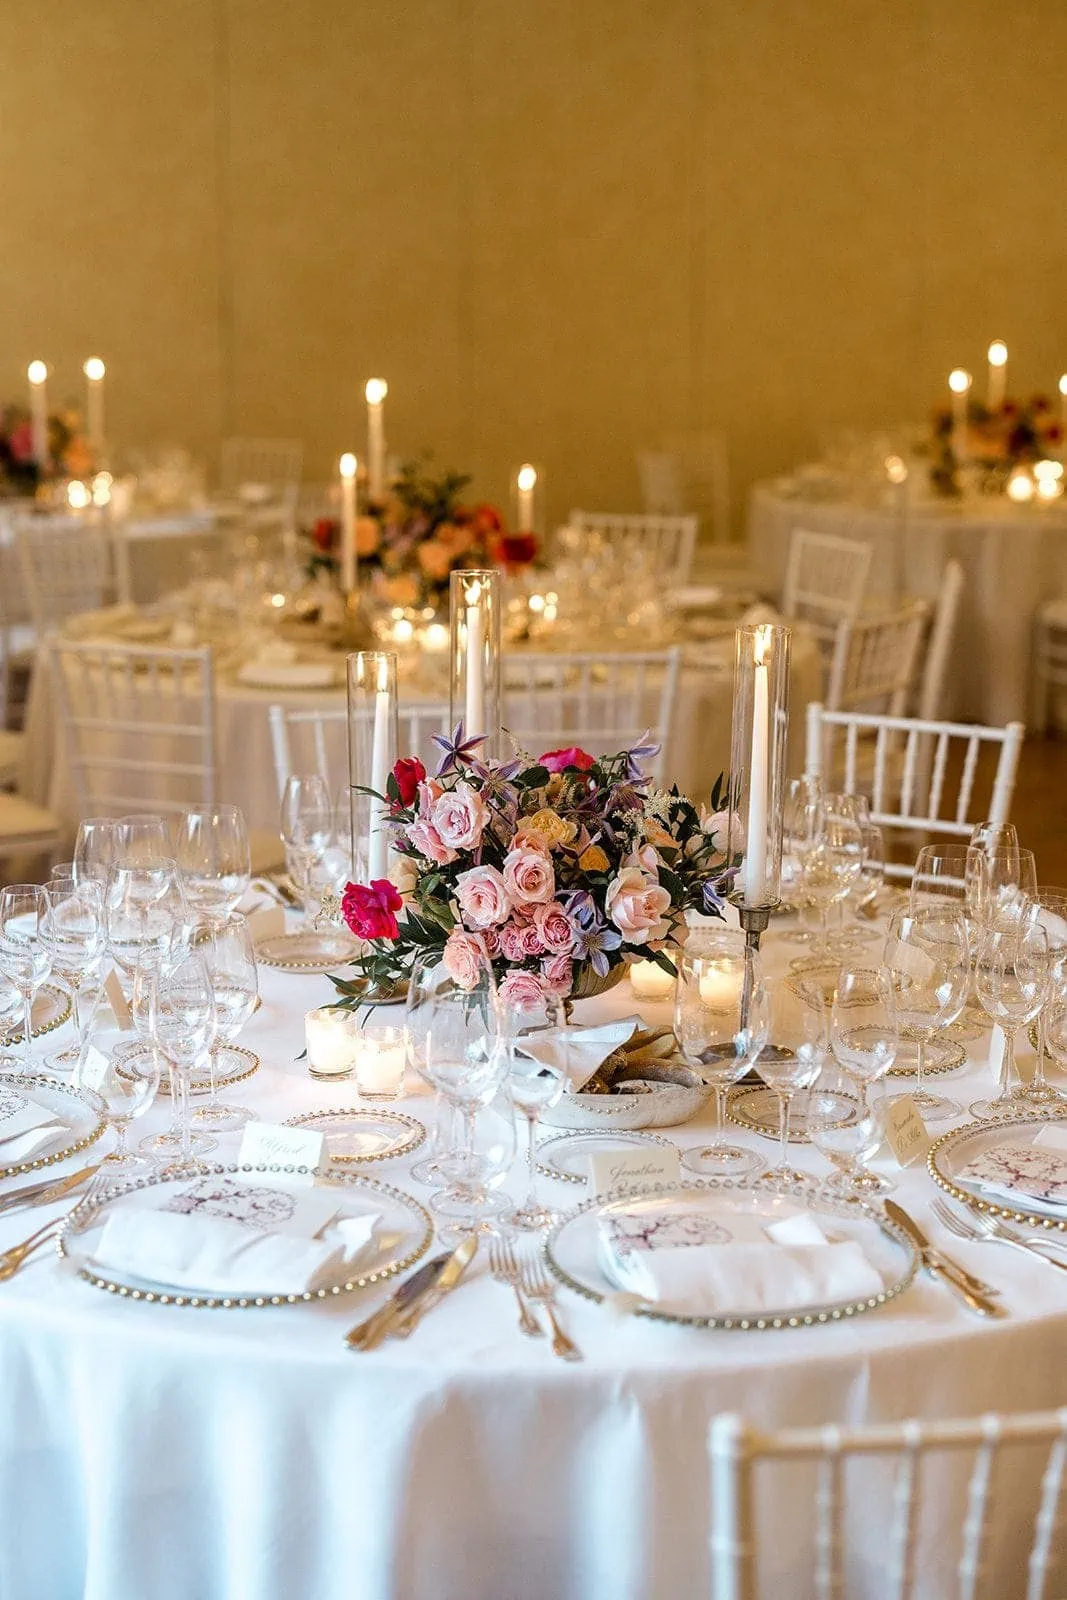 Belmond Caruso Hotel wedding reception table design